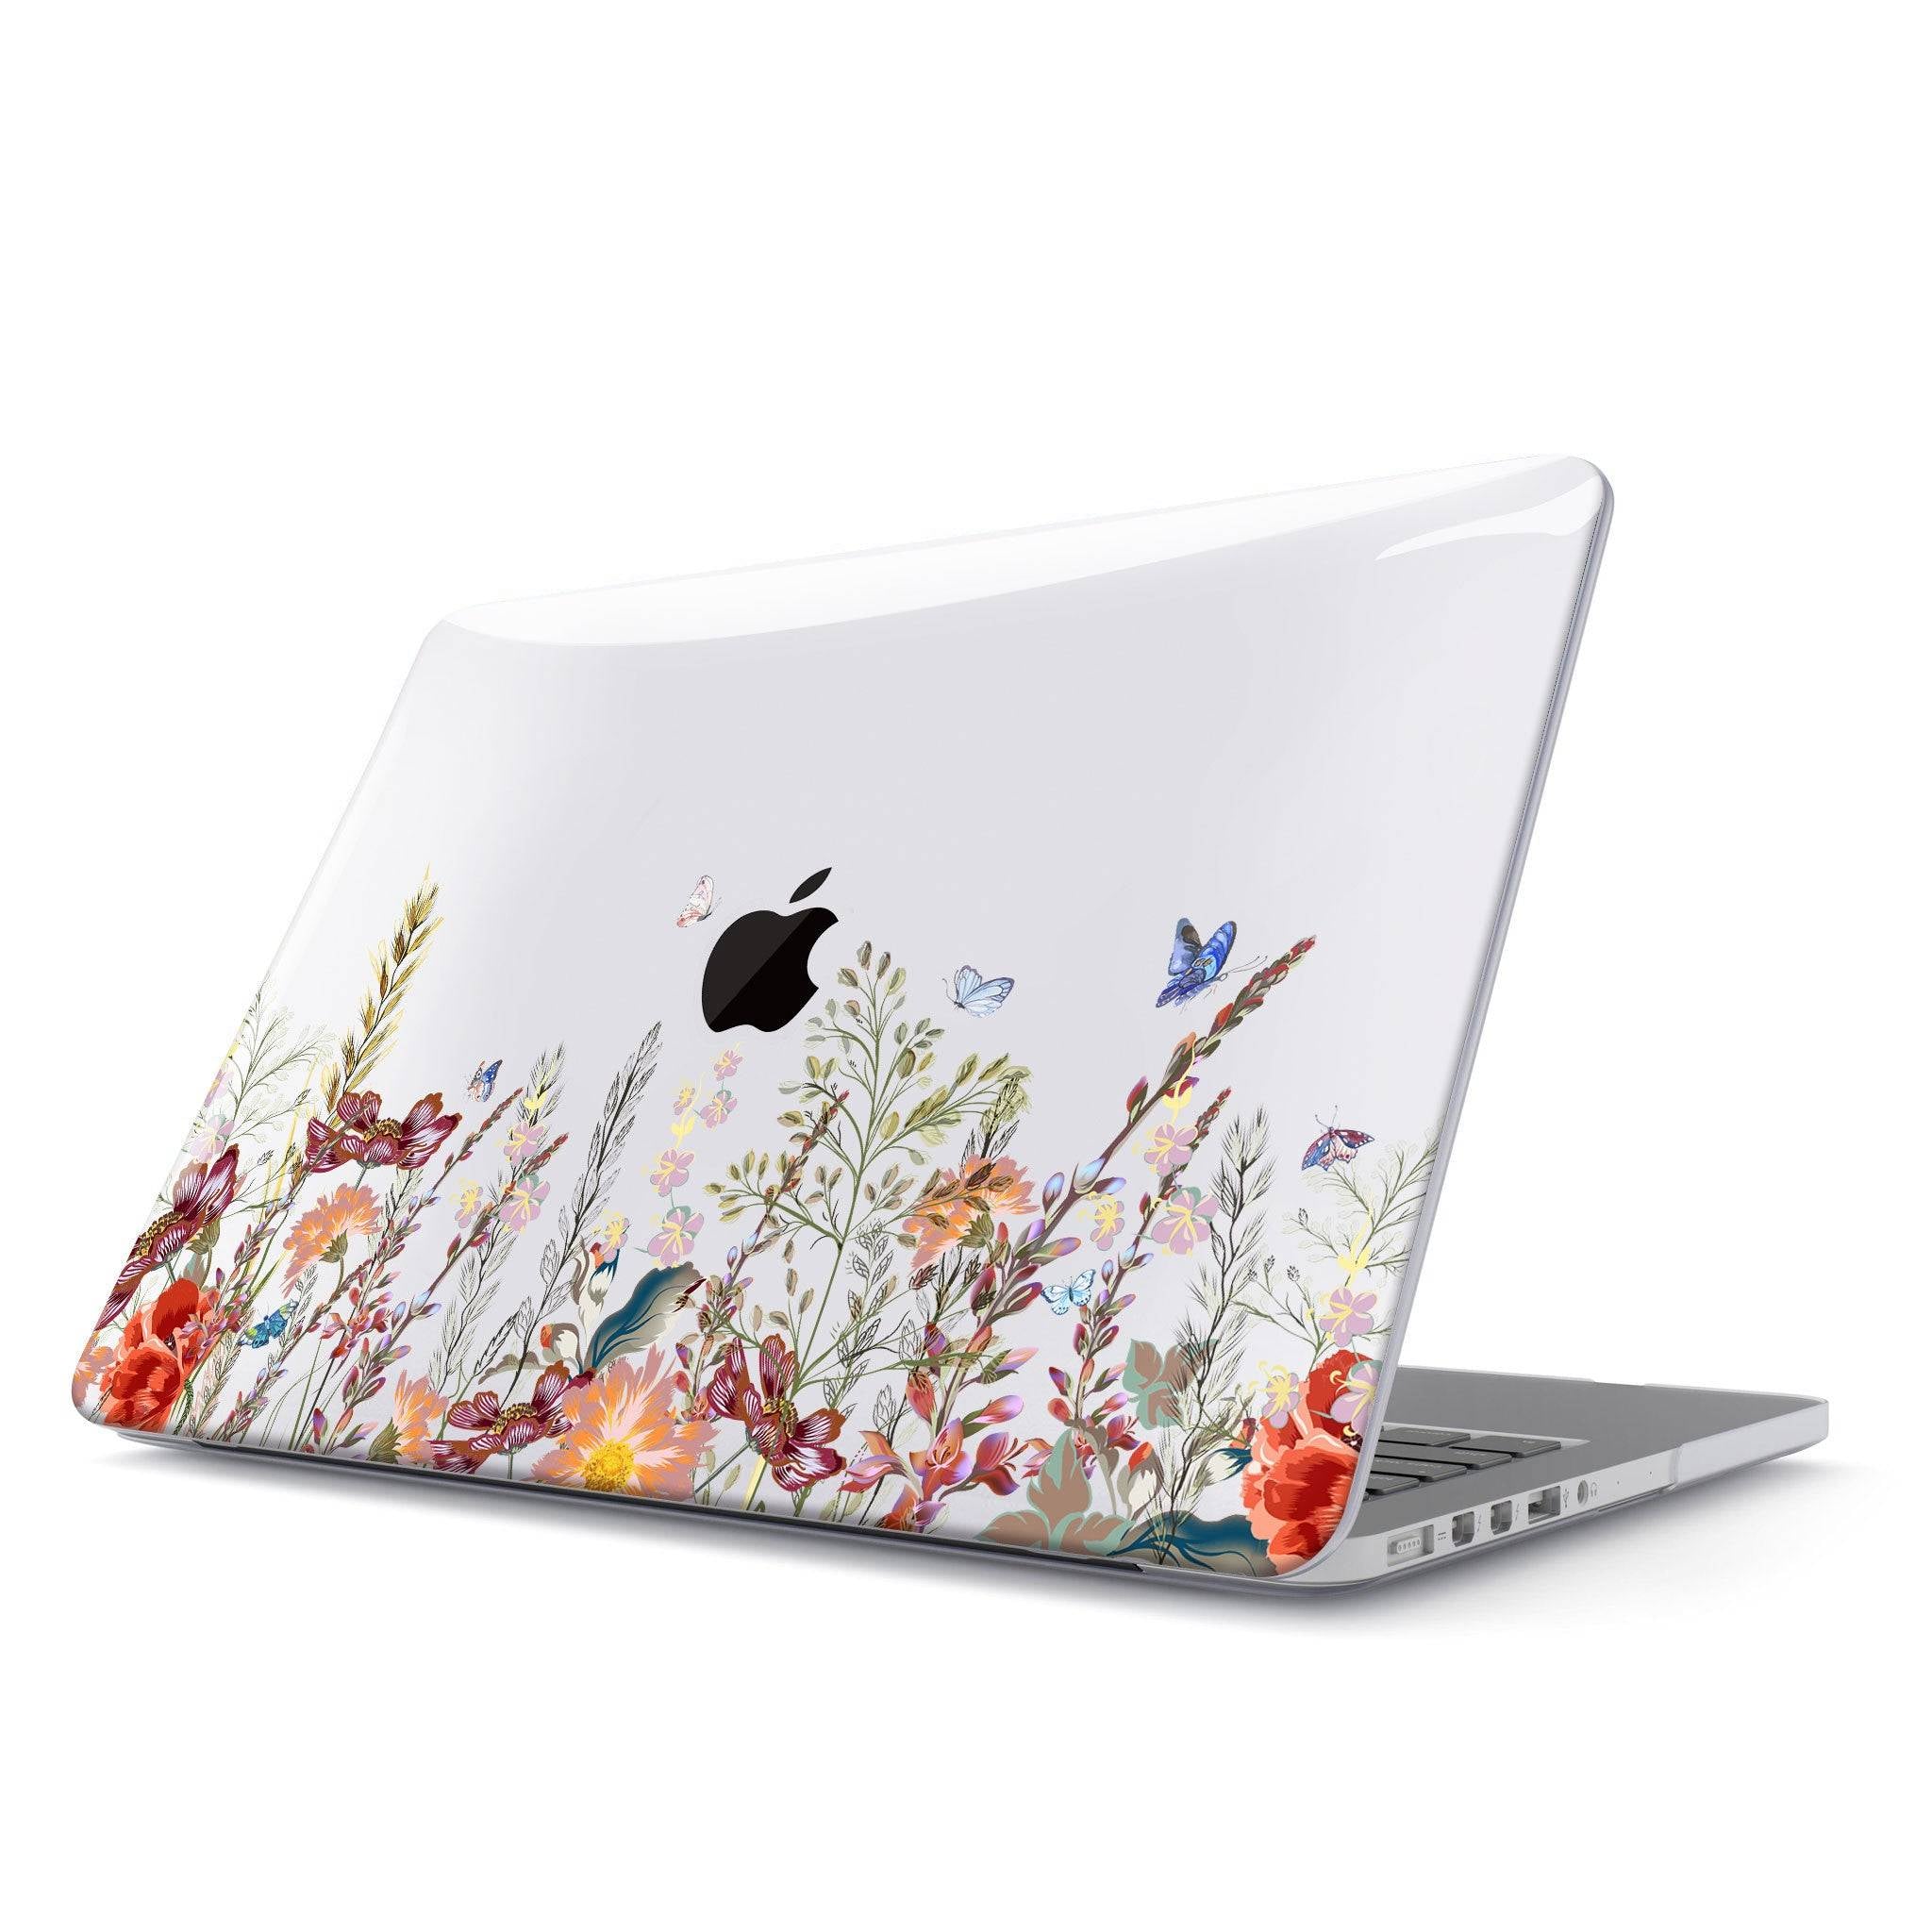 Butterfly In Flower Macbook case